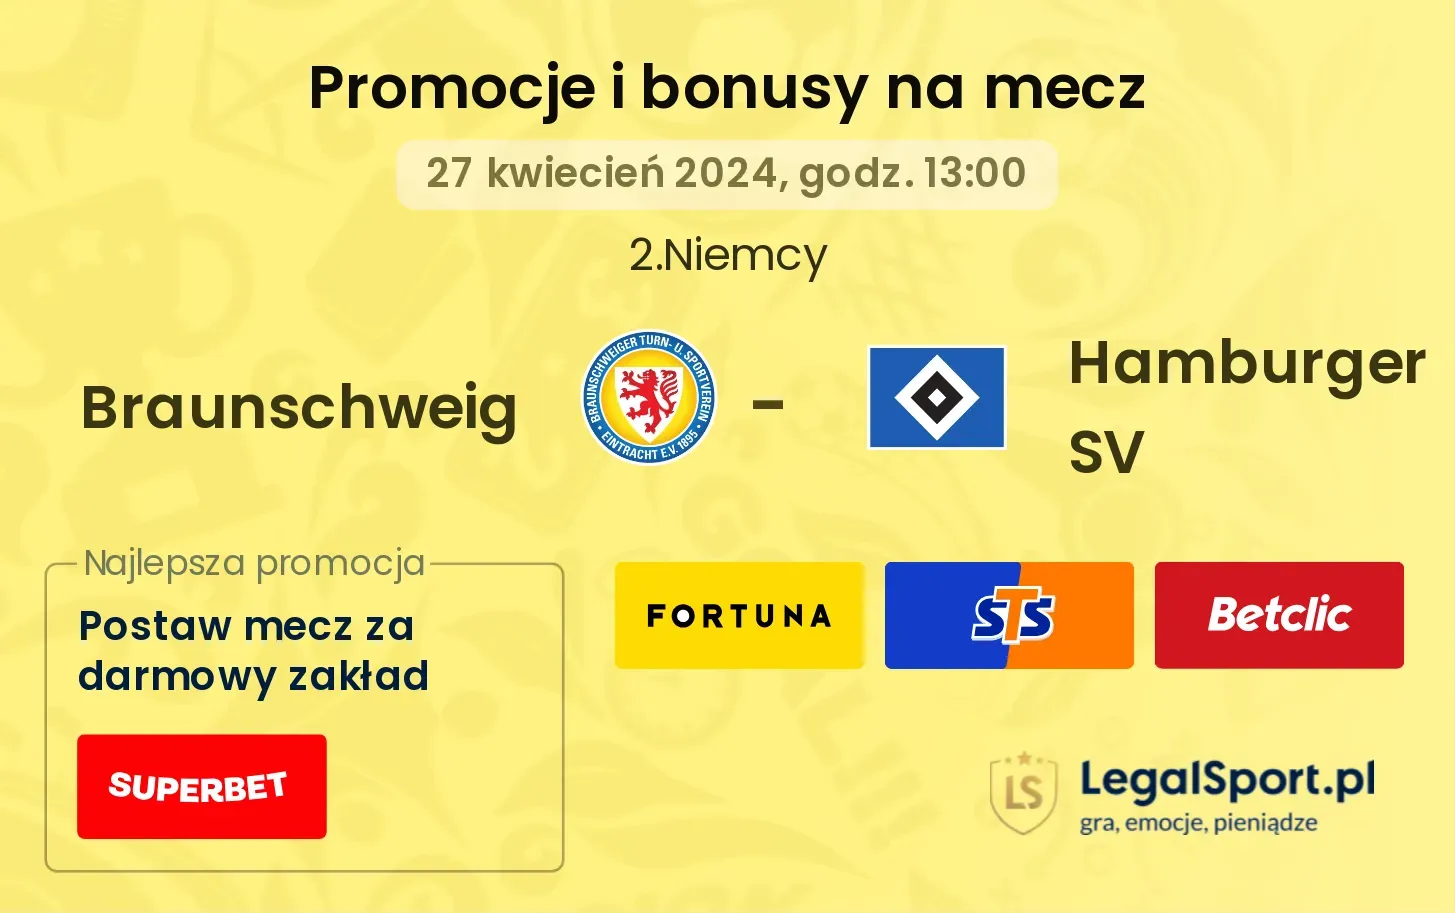 Braunschweig - Hamburger SV promocje bonusy na mecz